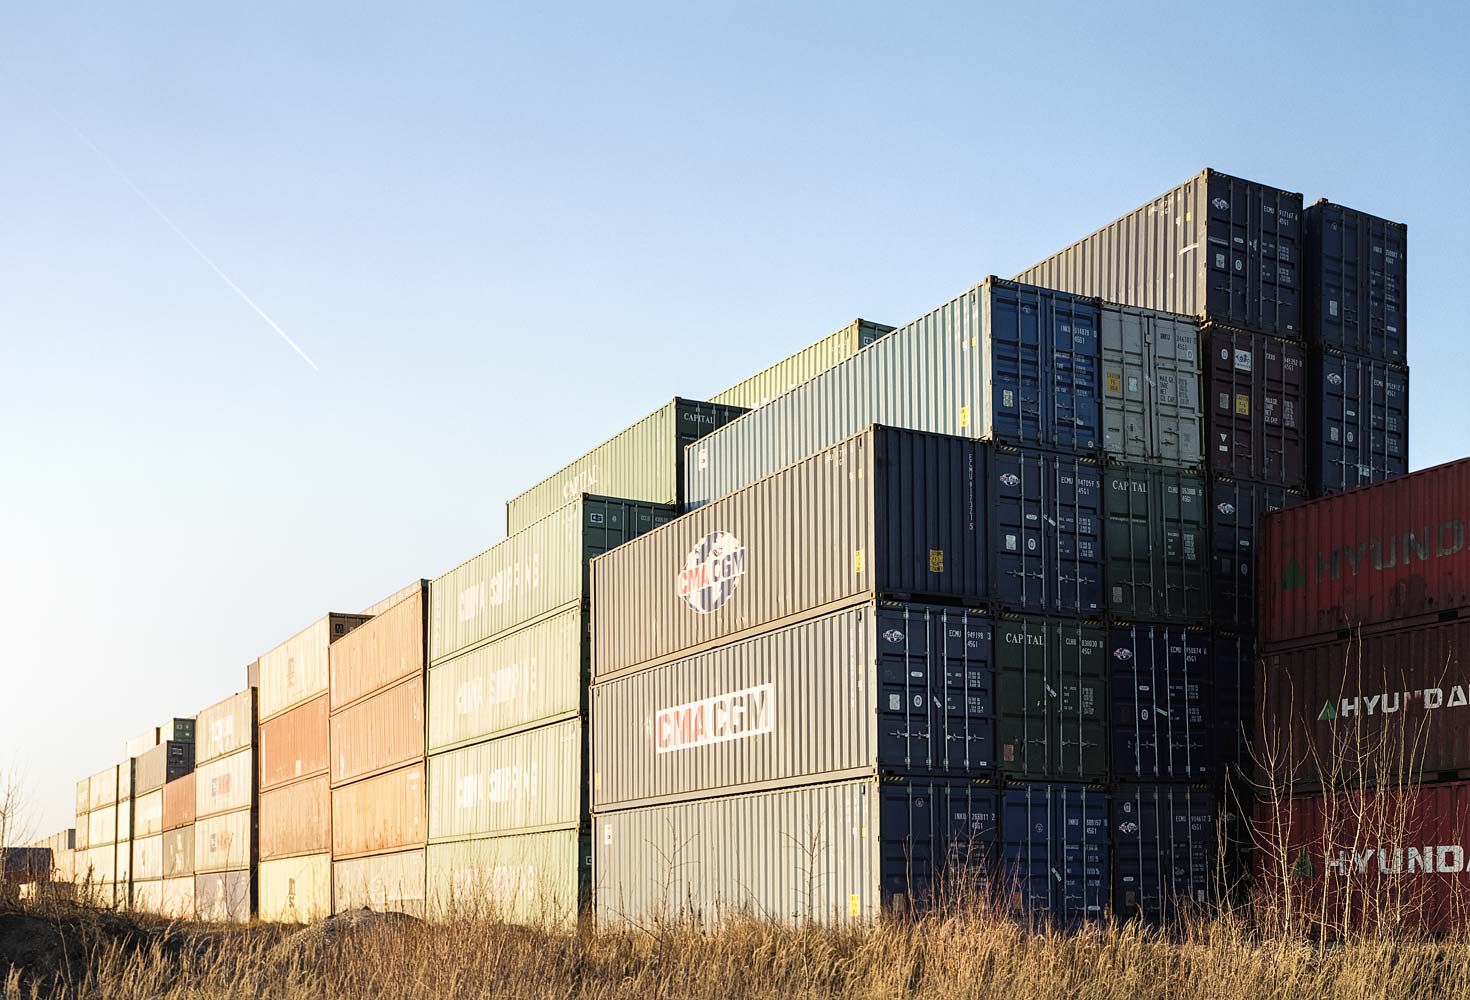 Containerterminal fotografiert von Sergey Kleptcha